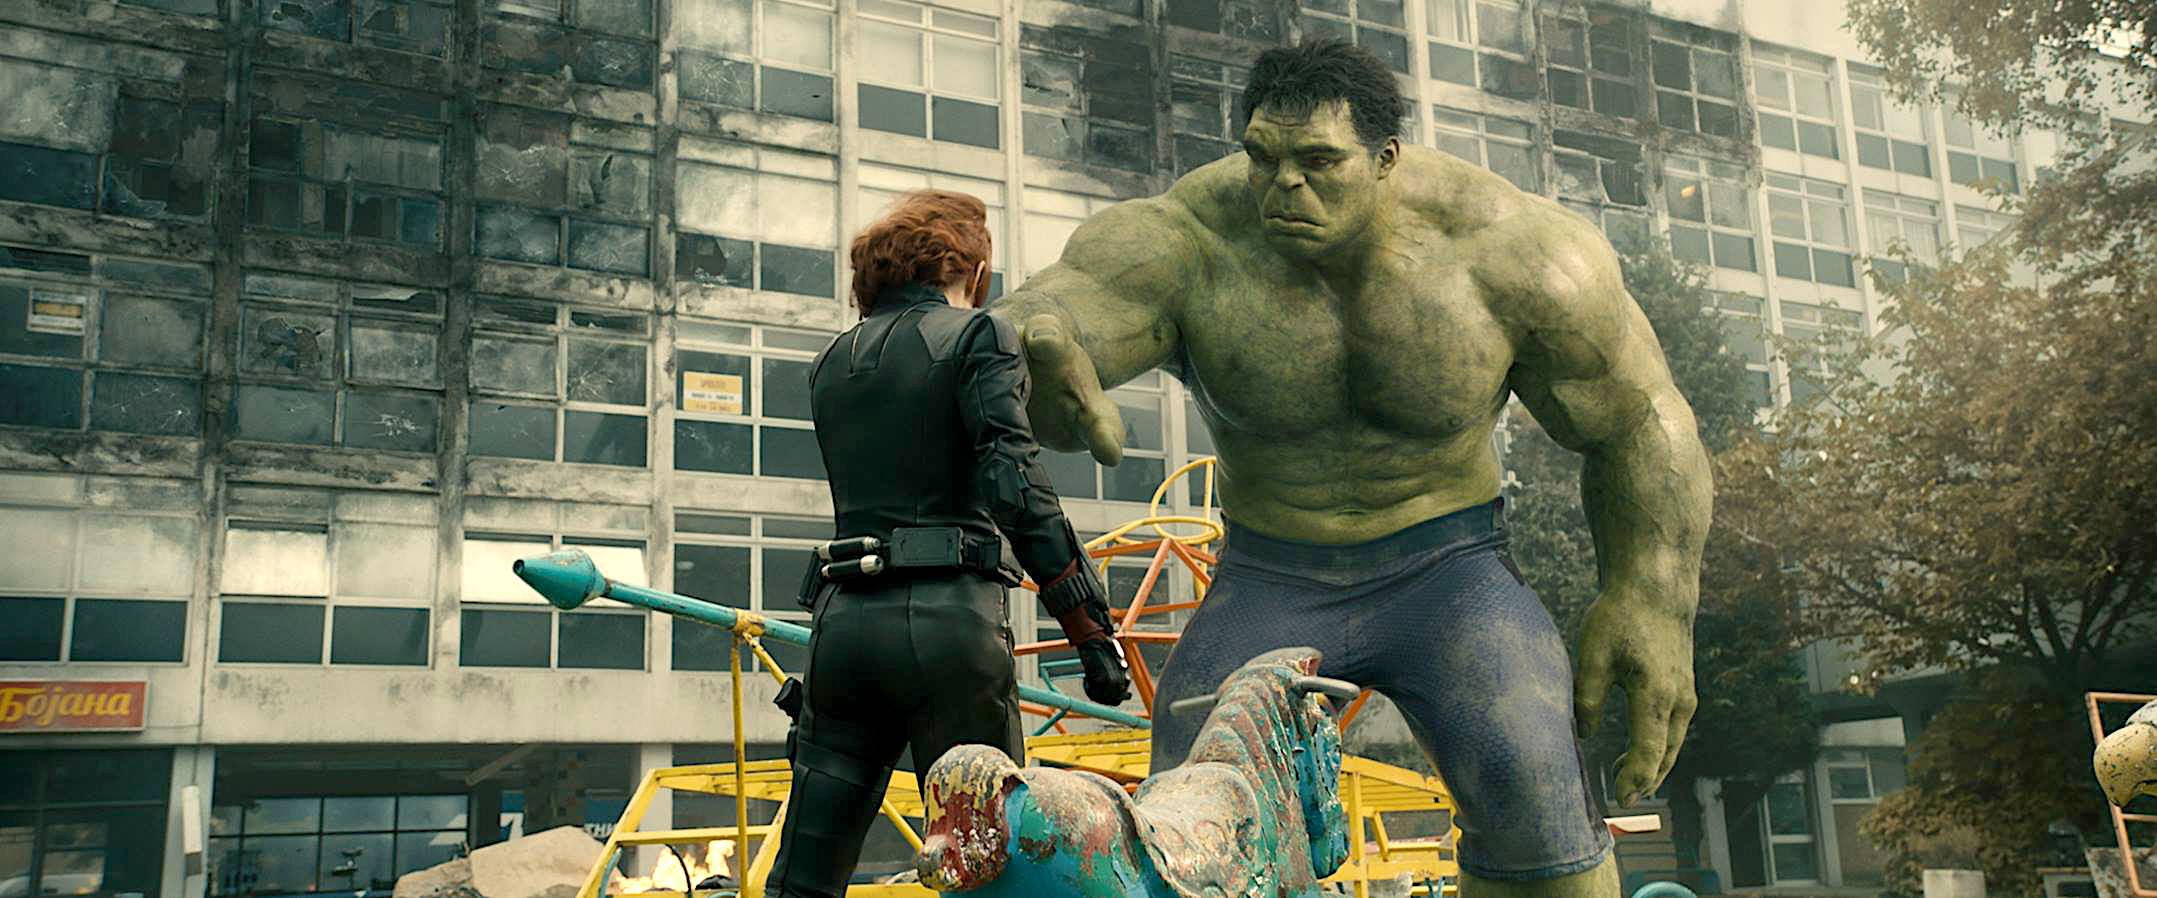 Bruce Banner, The Hulk, Avengers